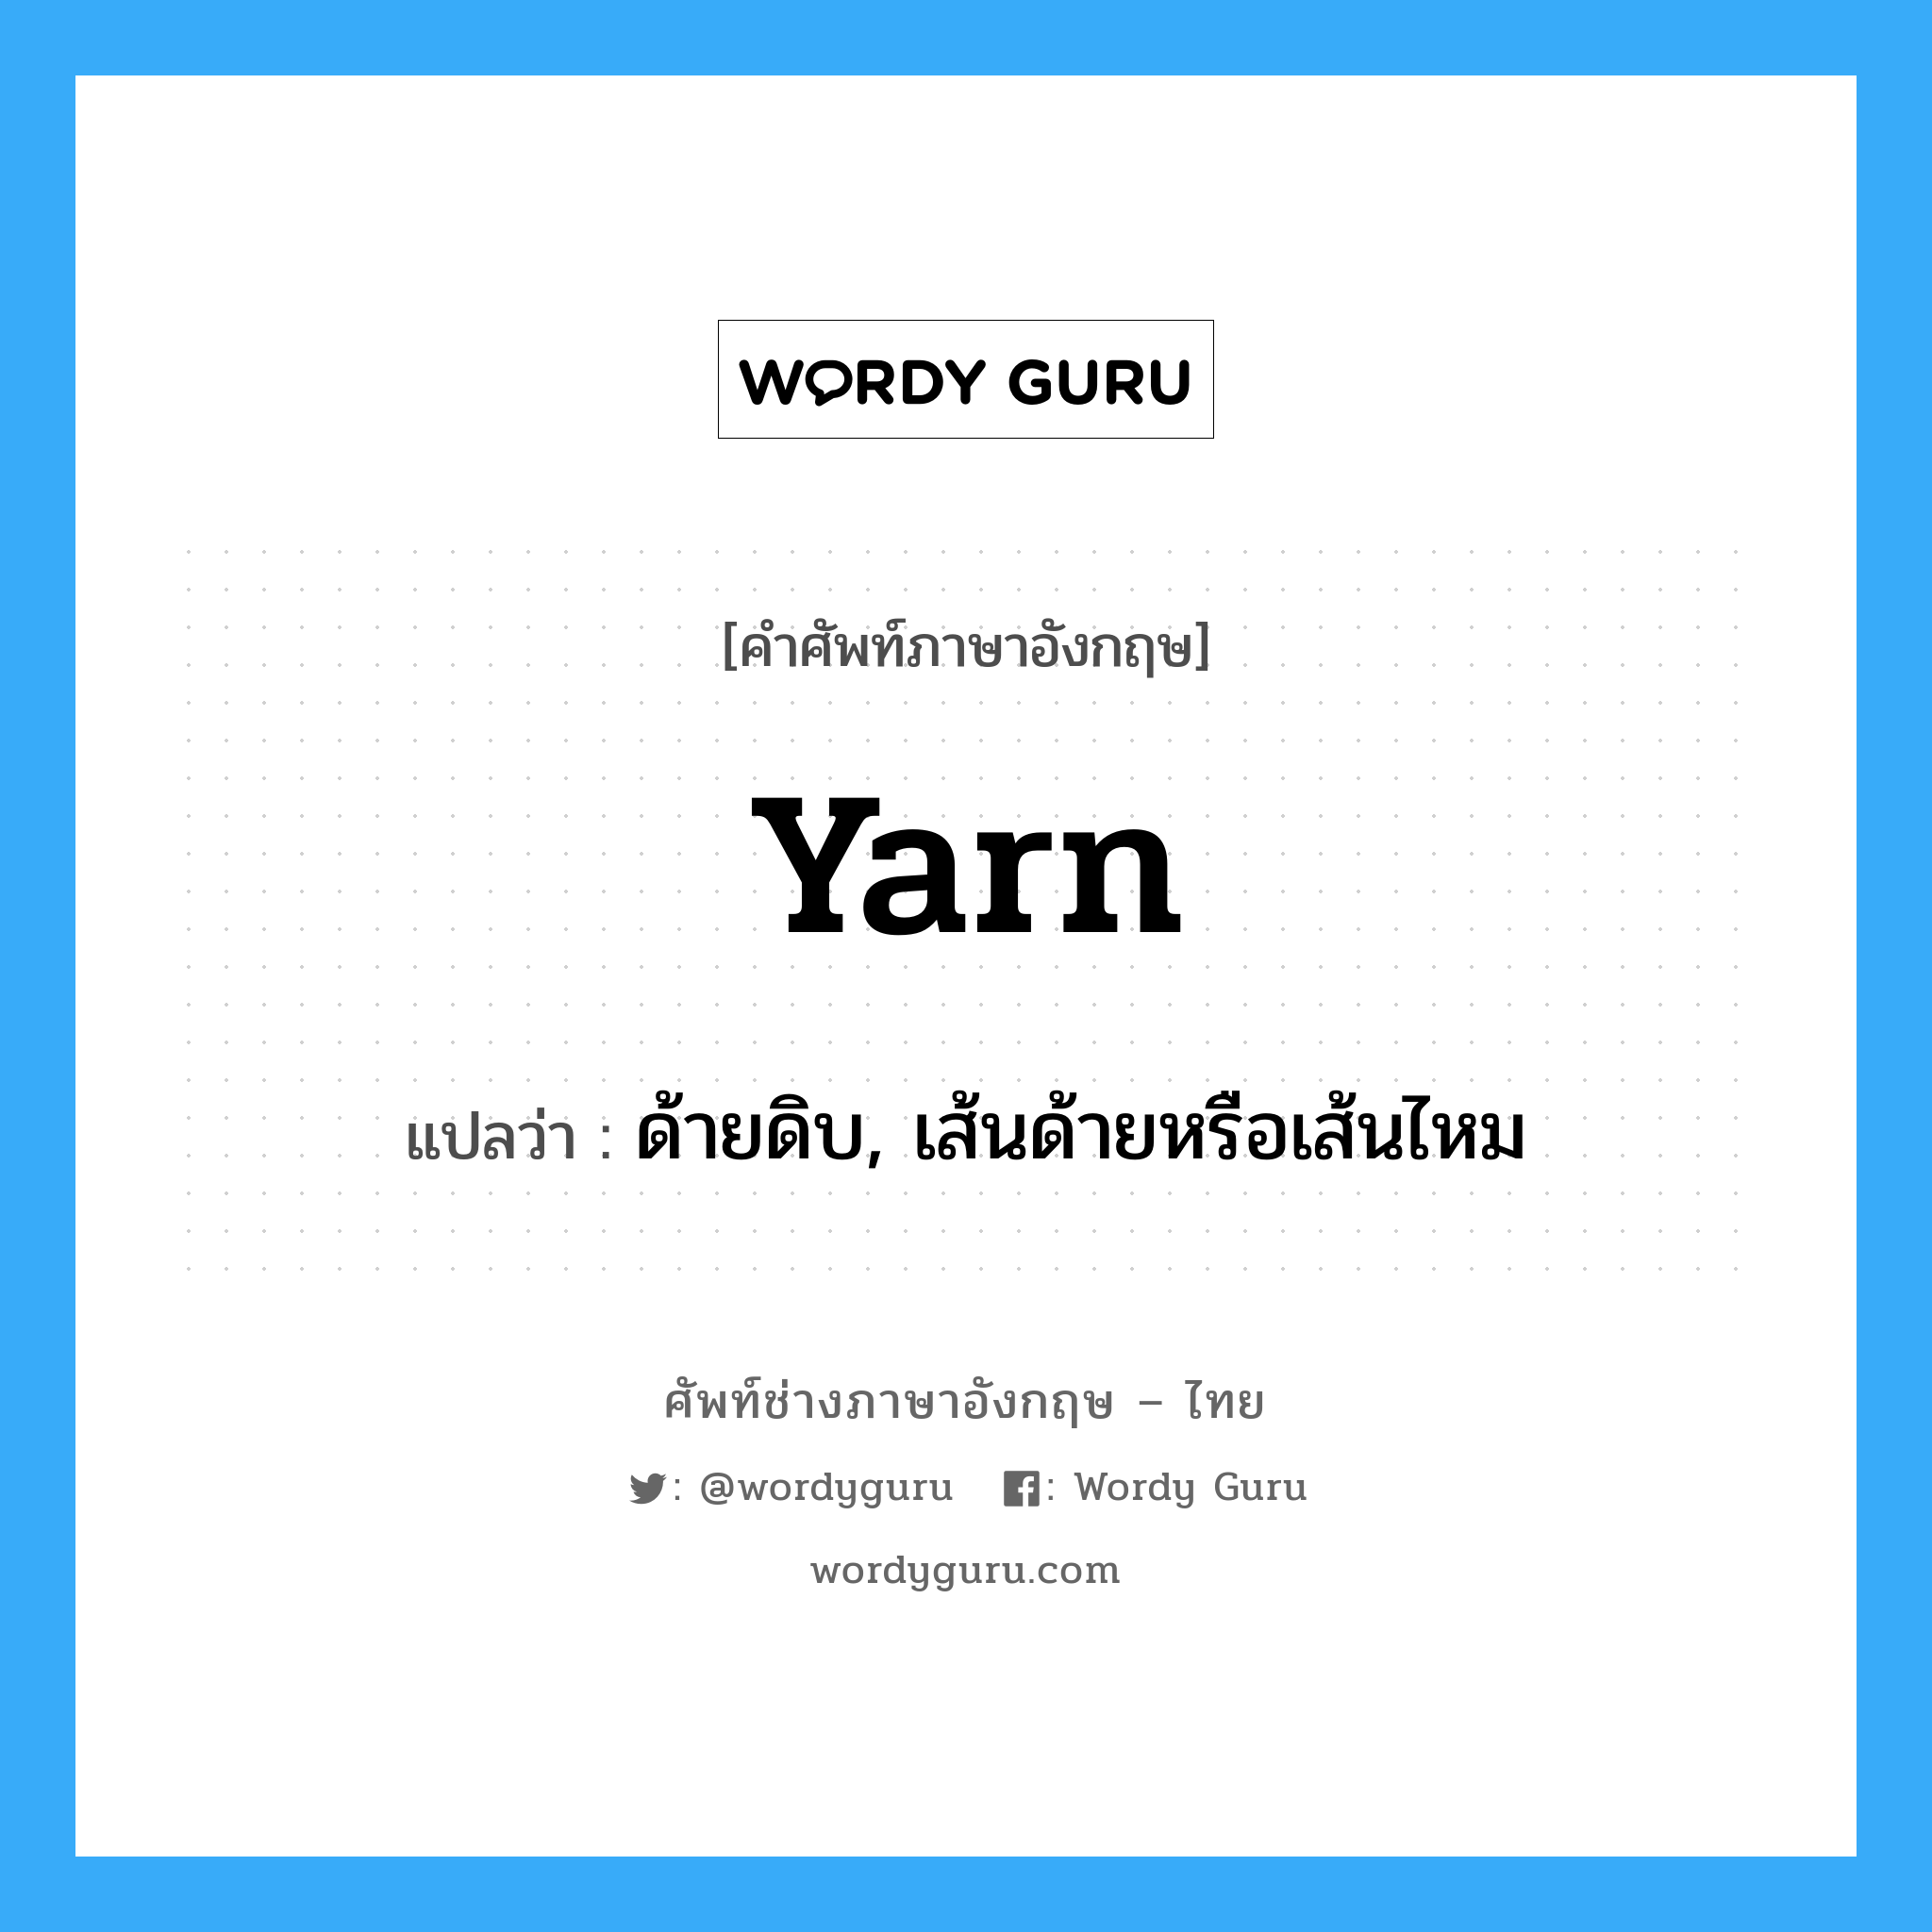 yarn แปลว่า?, คำศัพท์ช่างภาษาอังกฤษ - ไทย yarn คำศัพท์ภาษาอังกฤษ yarn แปลว่า ด้ายดิบ, เส้นด้ายหรือเส้นไหม